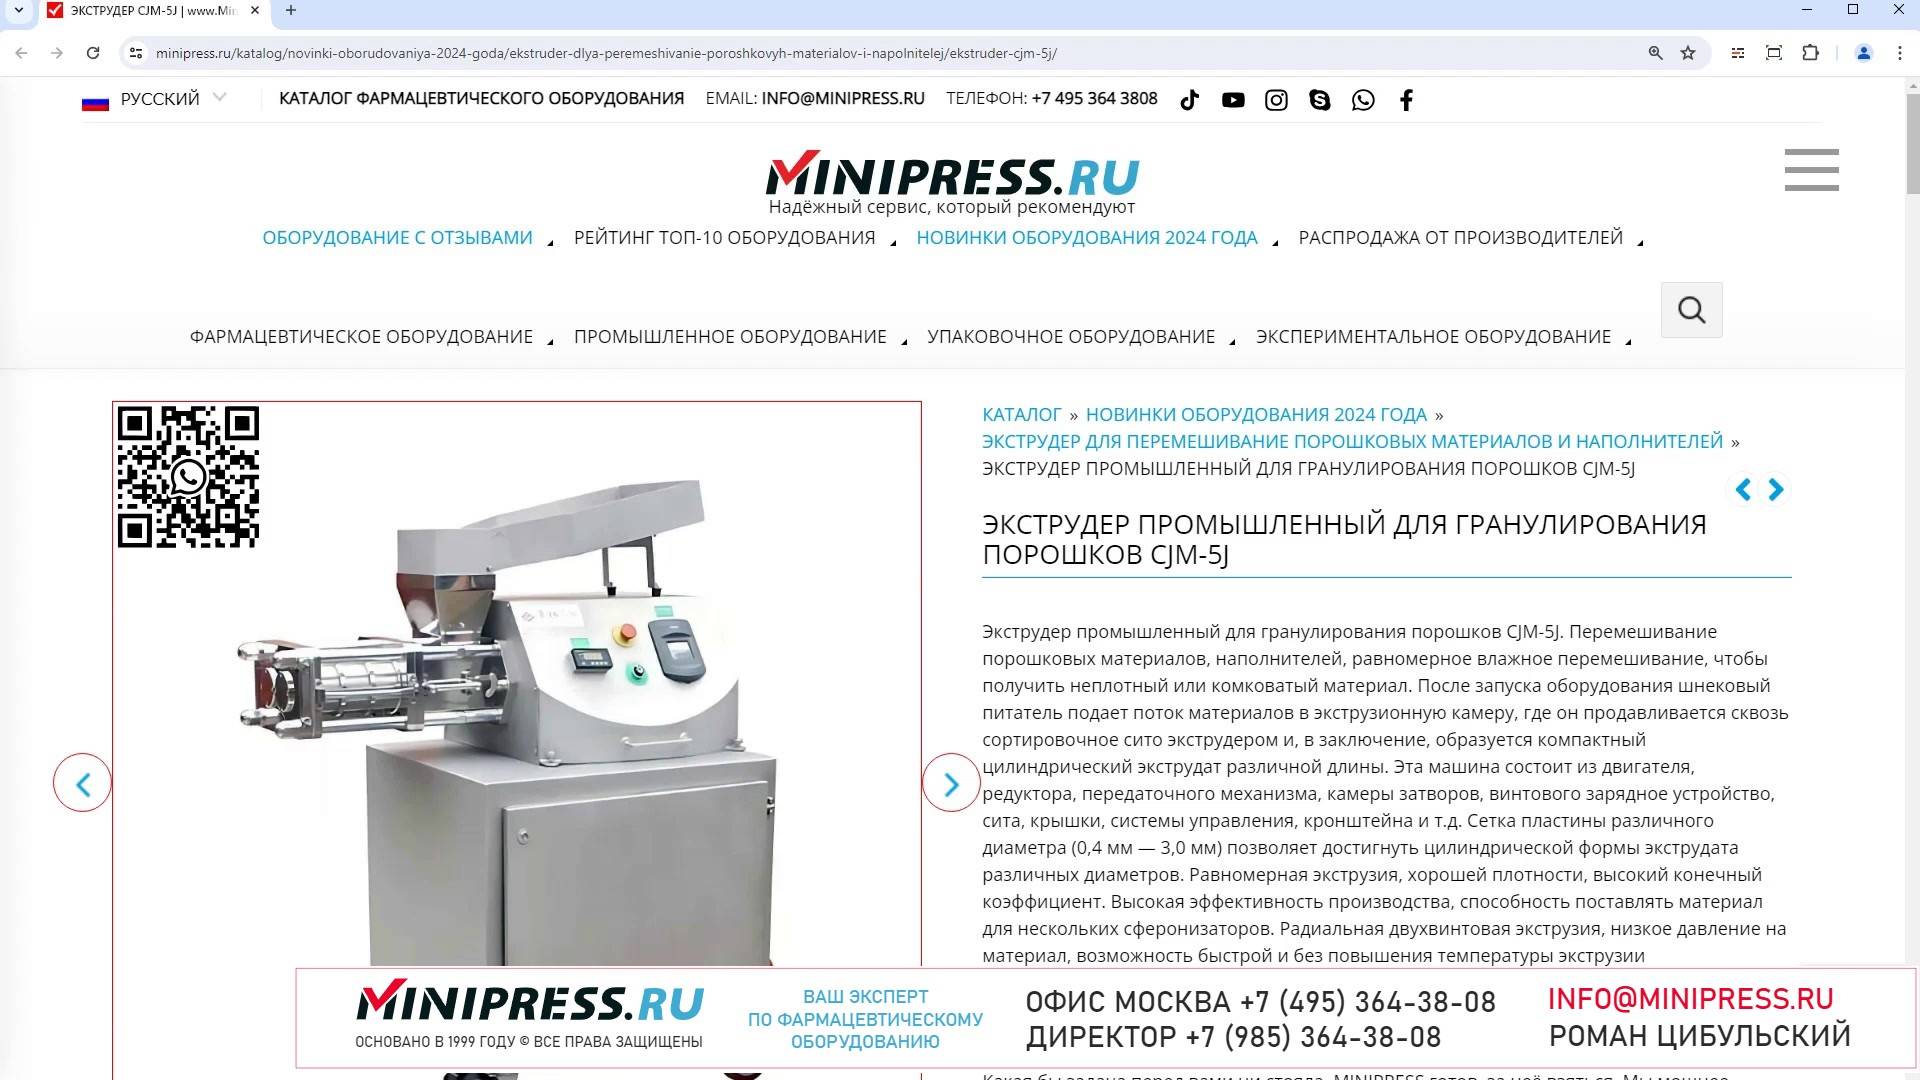 Minipress.ru Экструдер промышленный для гранулирования порошков CJM-5J